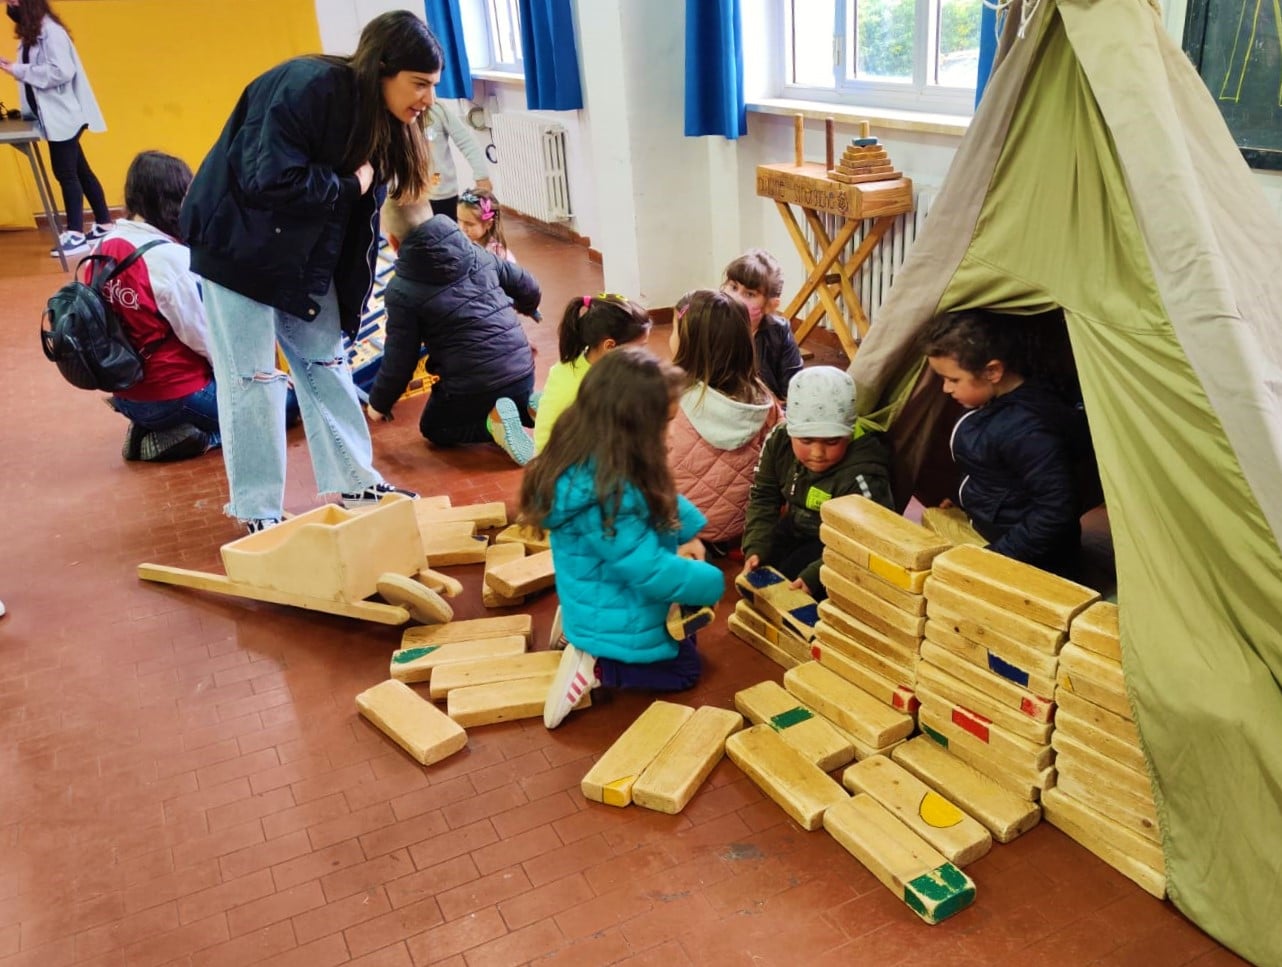 Il Ludobus questa volta ha fatto tappa a  Civitaquana e Catignano portando tanti tesori! Stupendi giochi in legno, di equilibrio e di abilità, con cui mettersi alla prova per divertirsi in compagnia e laboratori creativi!